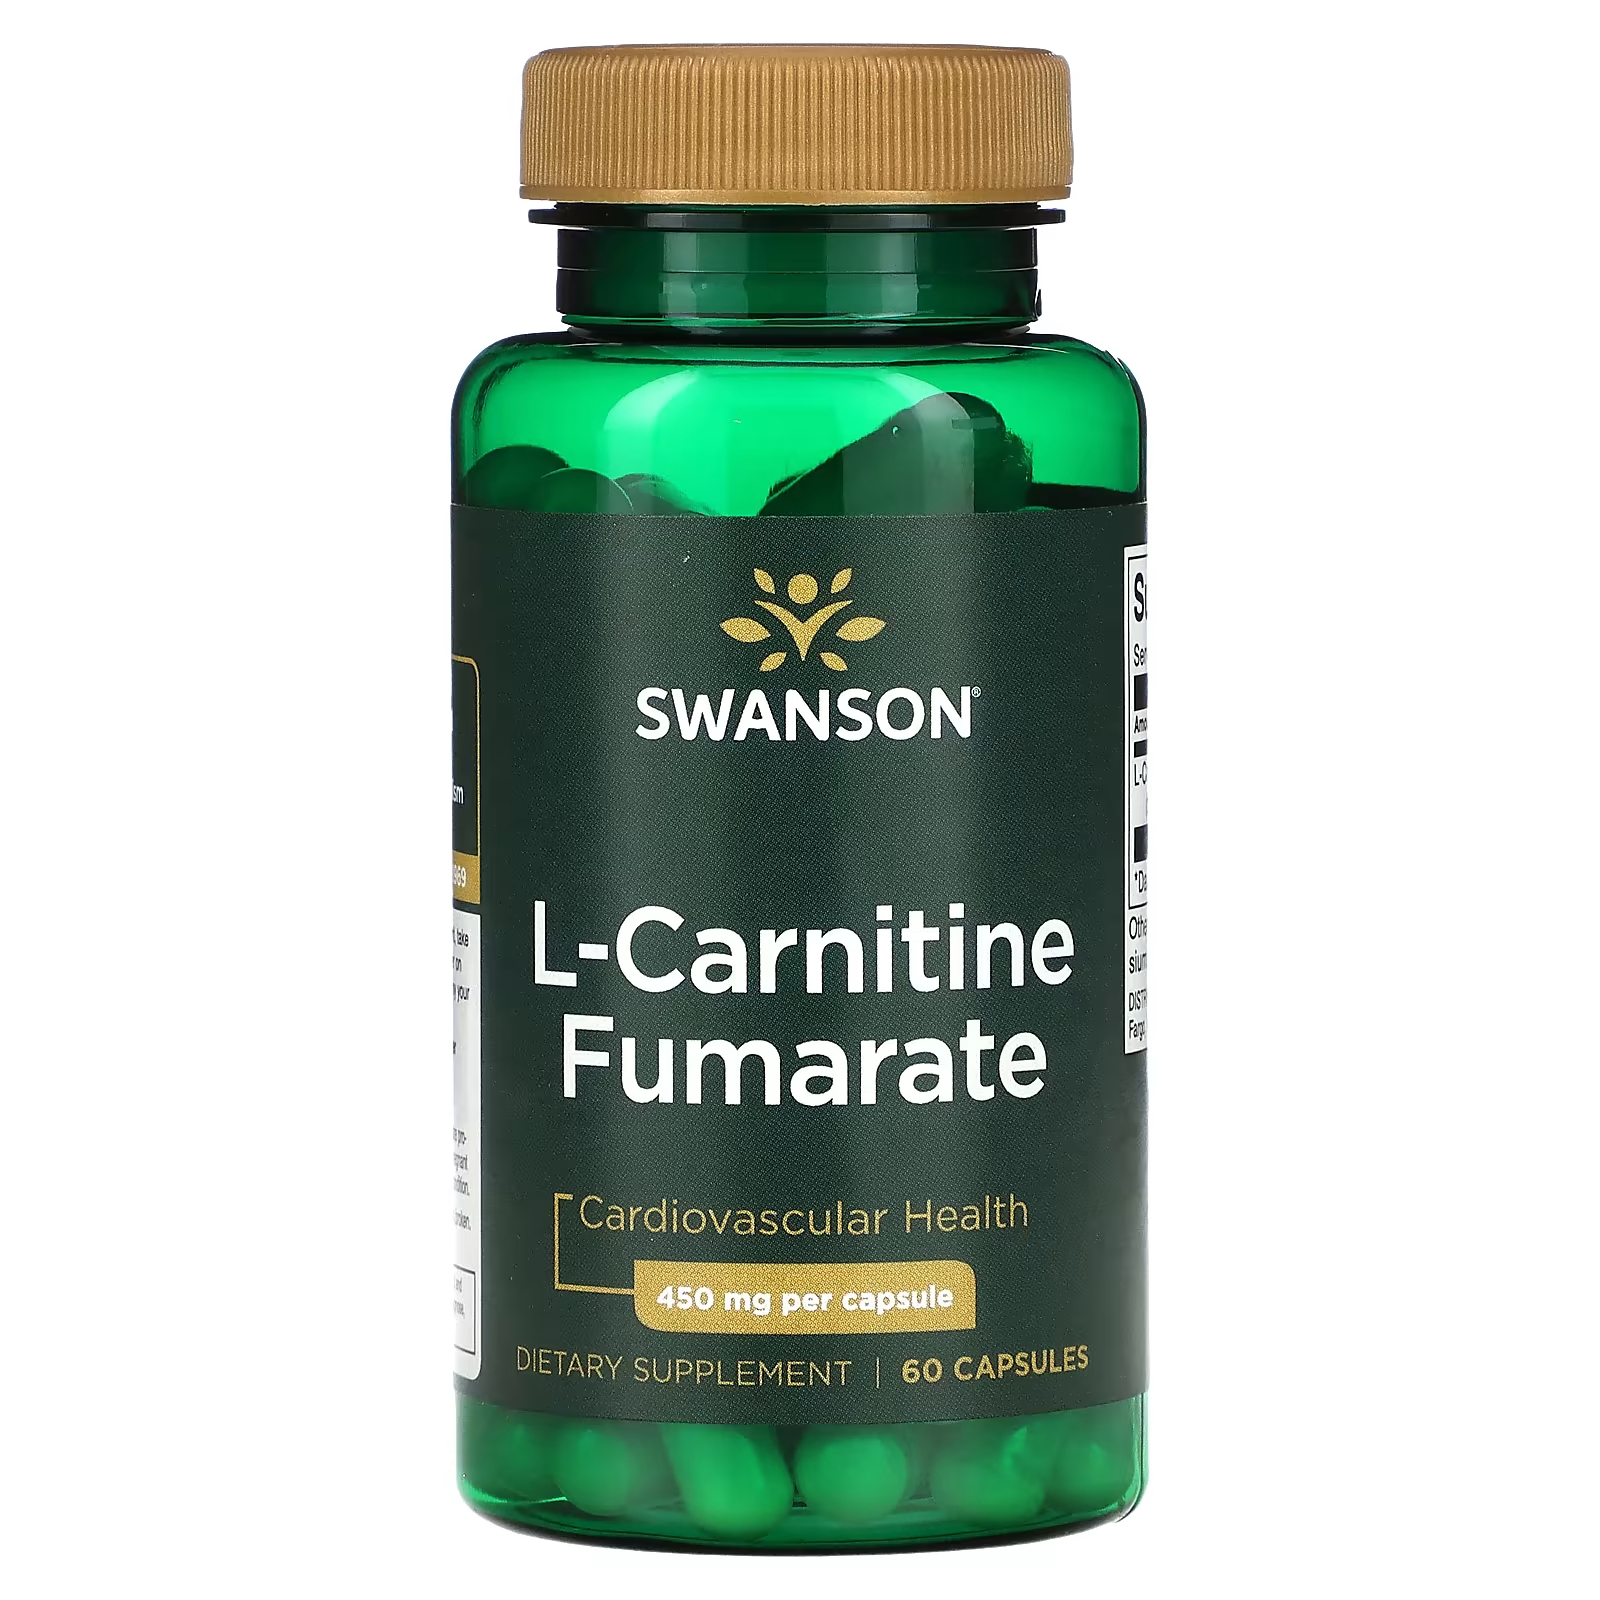 Swanson L-карнитин фумарат 450 мг 60 капсул бад plantago l карнитин 450 мг 60 шт